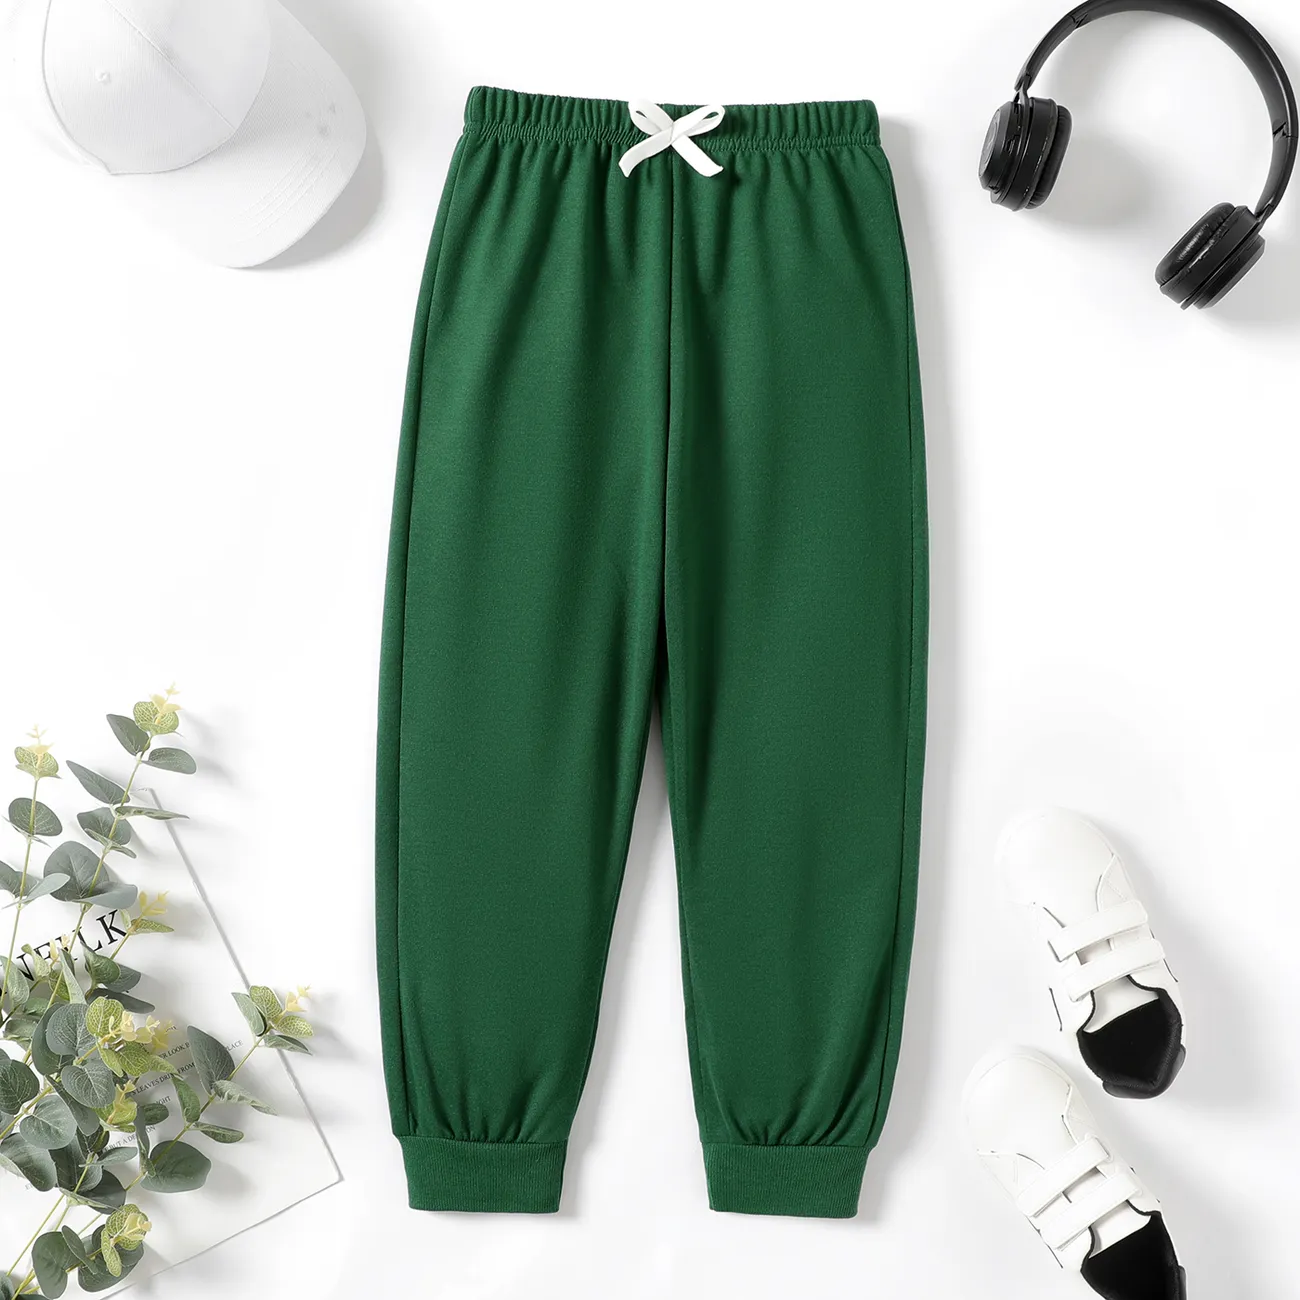 pantalone elasticizzato tinta unita ragazzo ragazzo/ragazza bambino Verde Militare big image 1